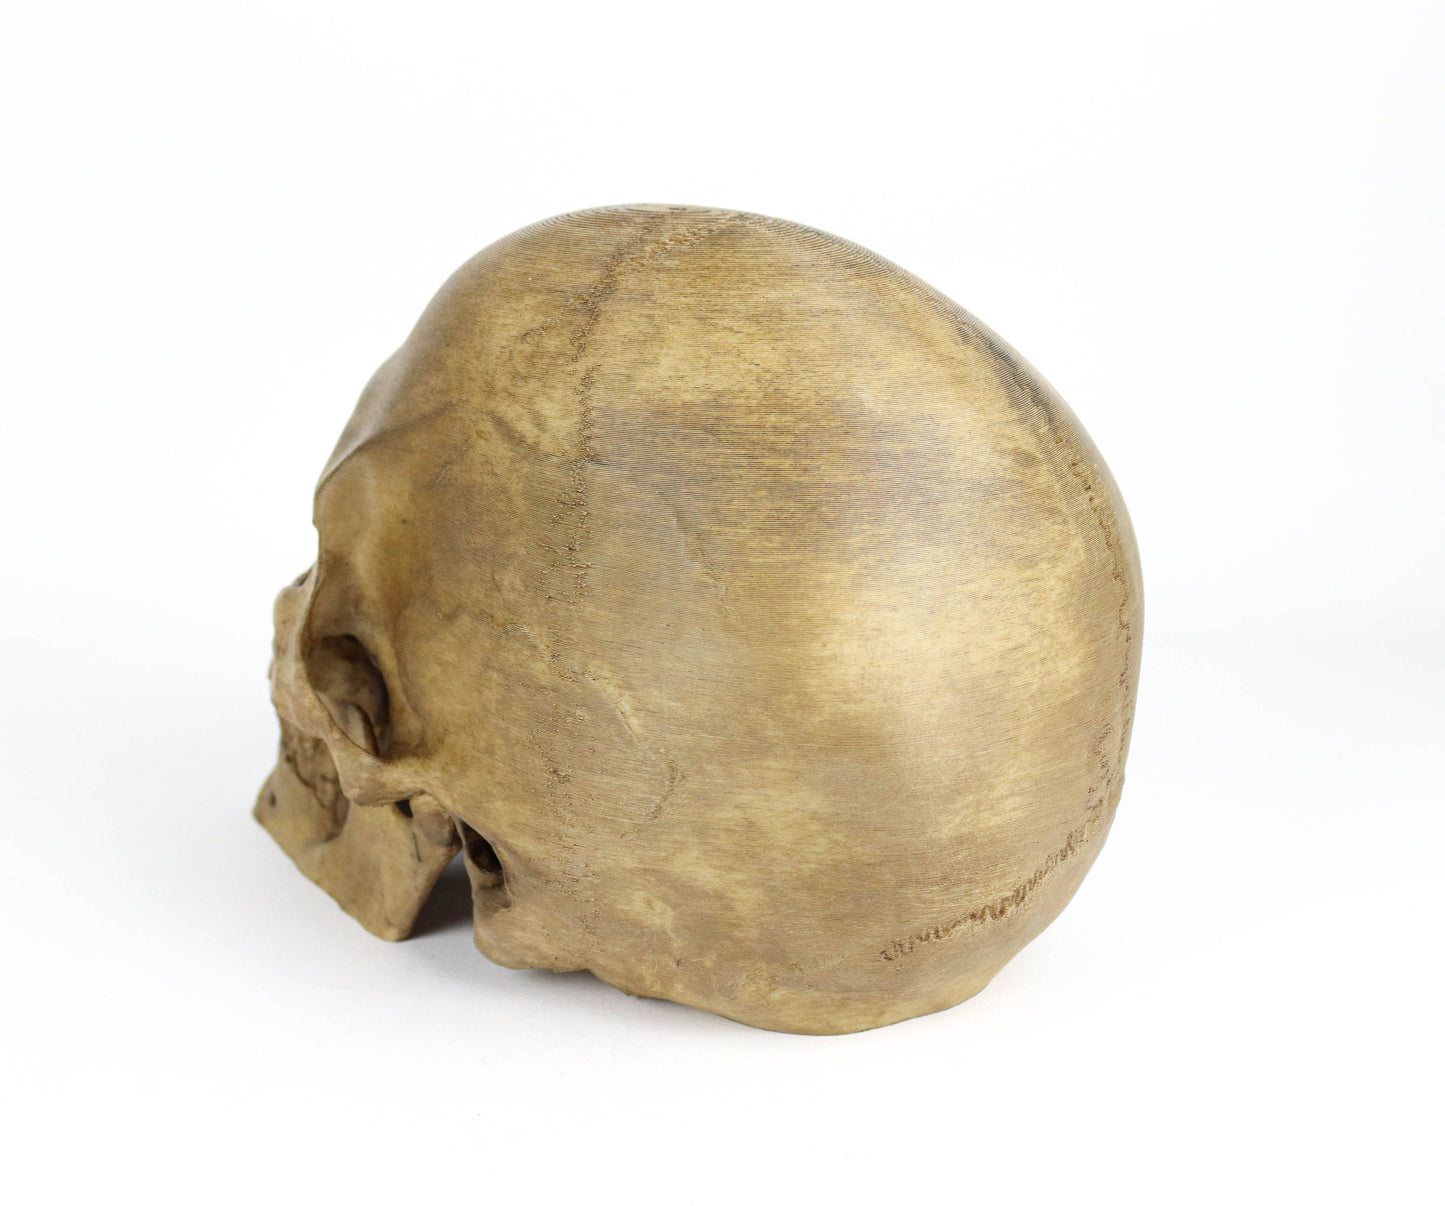 Aged Human Skull Decor, Lifesize Horror Prop, Headphone Holder Decoration